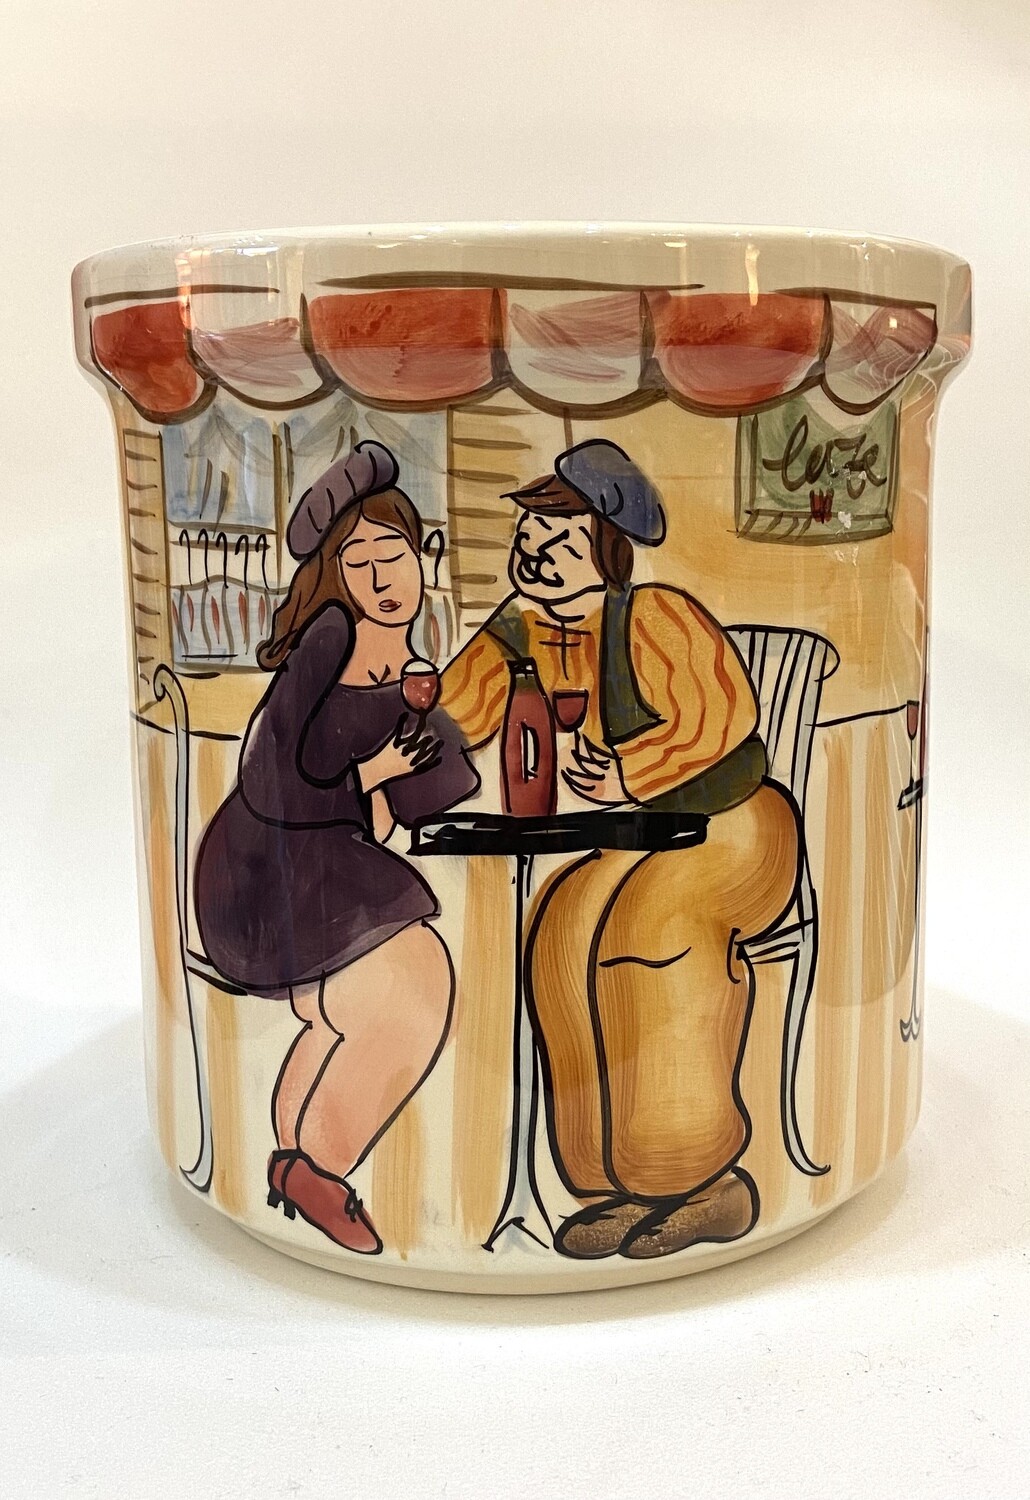 7” Ceramic Pot with Café Scene